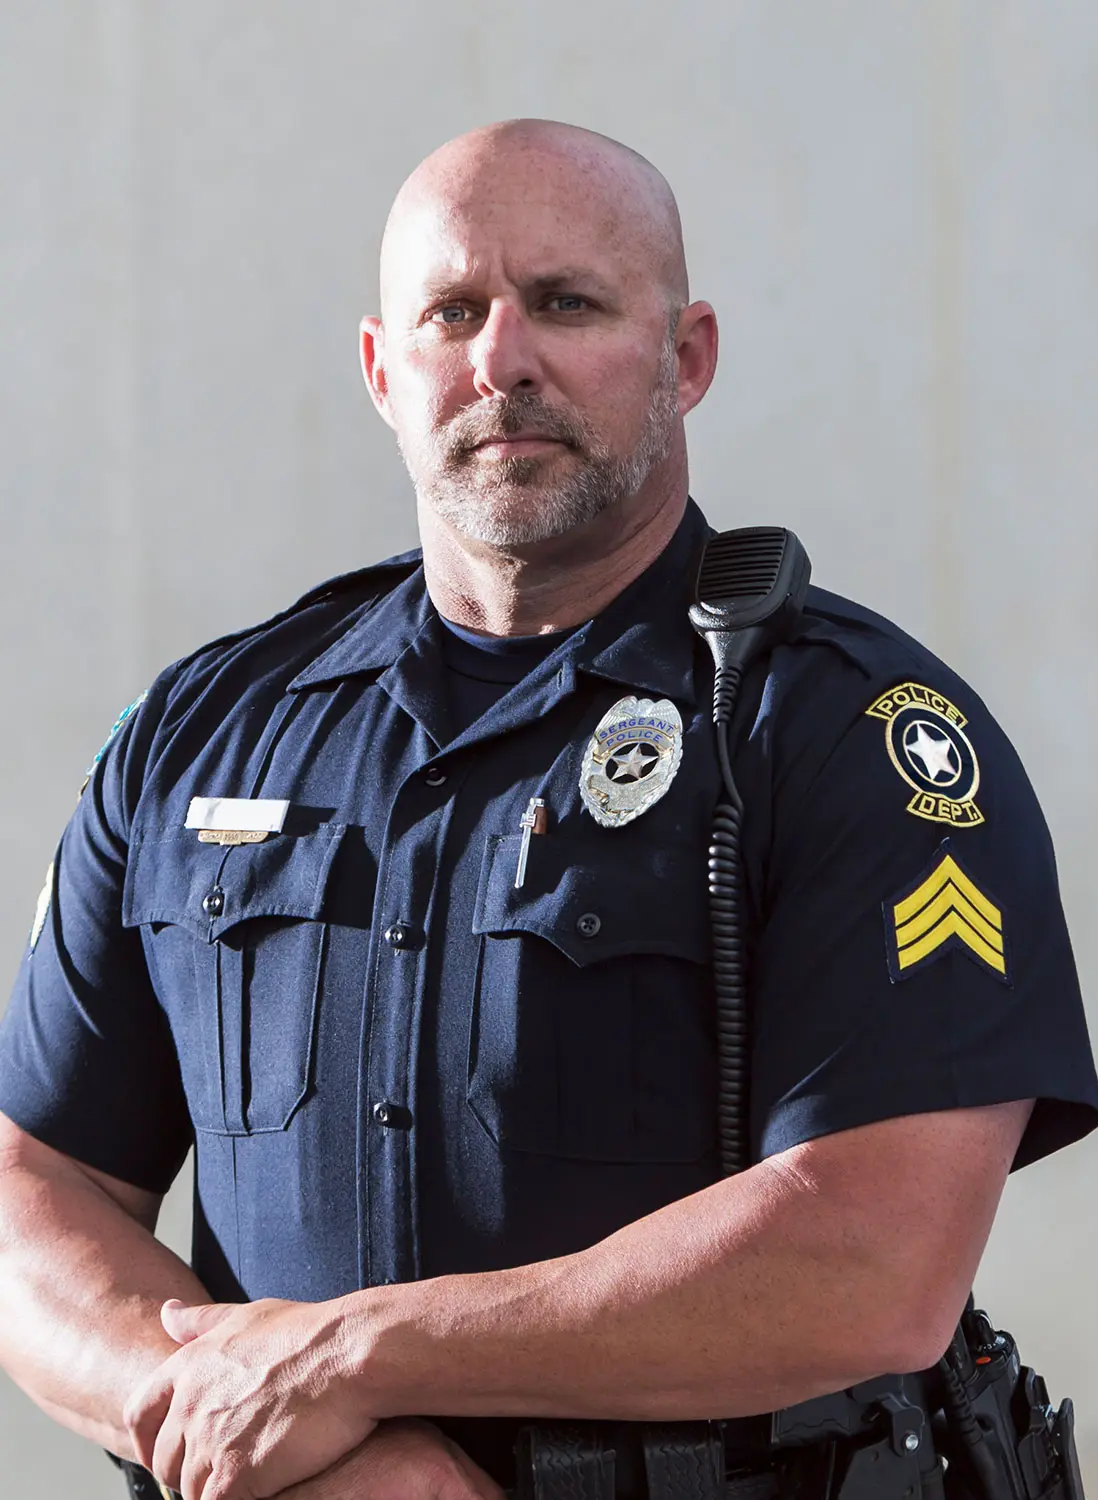 Stoic public safety law enforcement officer portrait